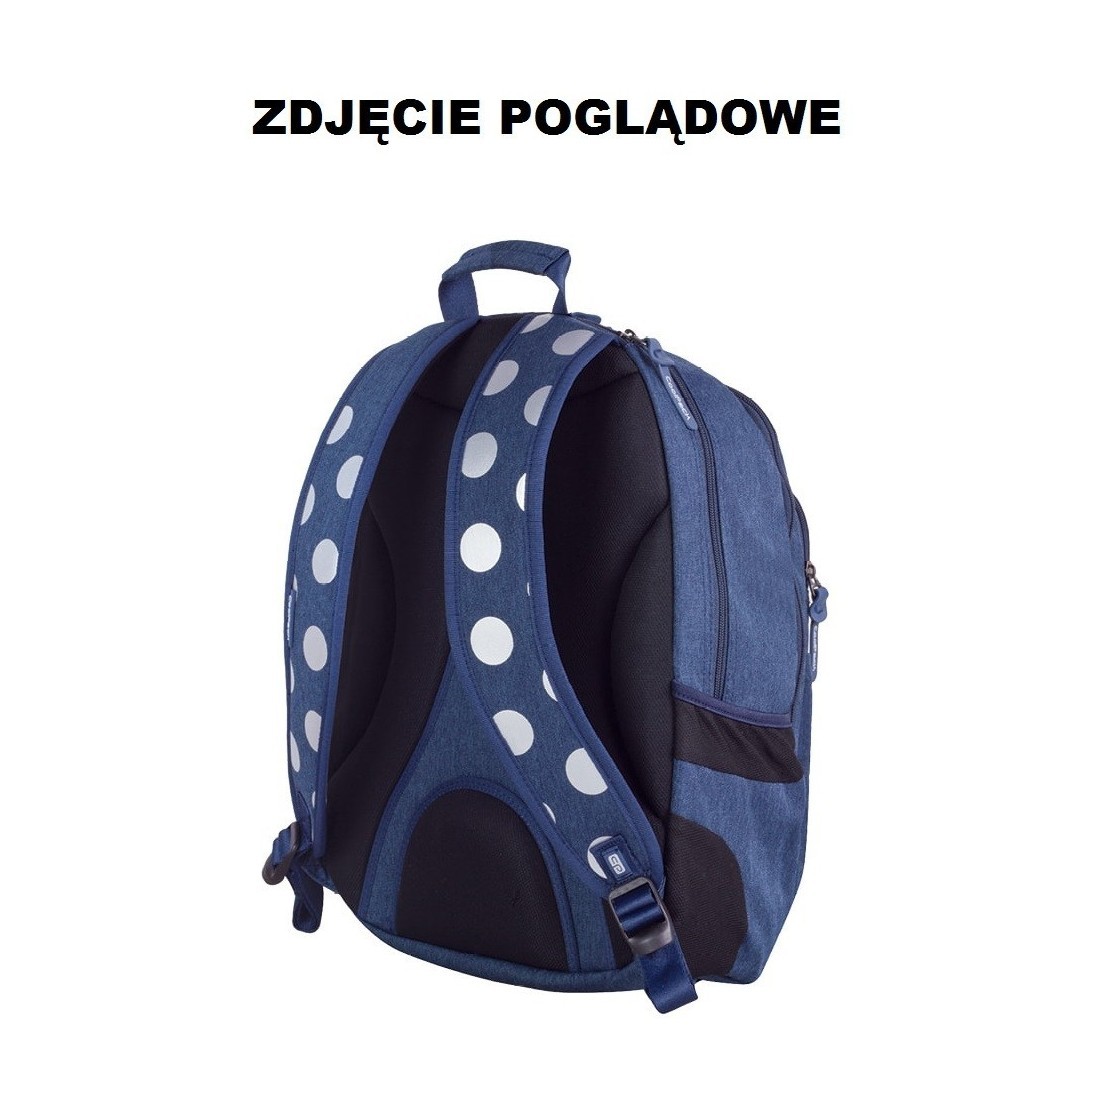 Plecak młodzieżowy CoolPack 702 Unit Silver Dots Grey dla dziewczyny - plecak-tornister.pl